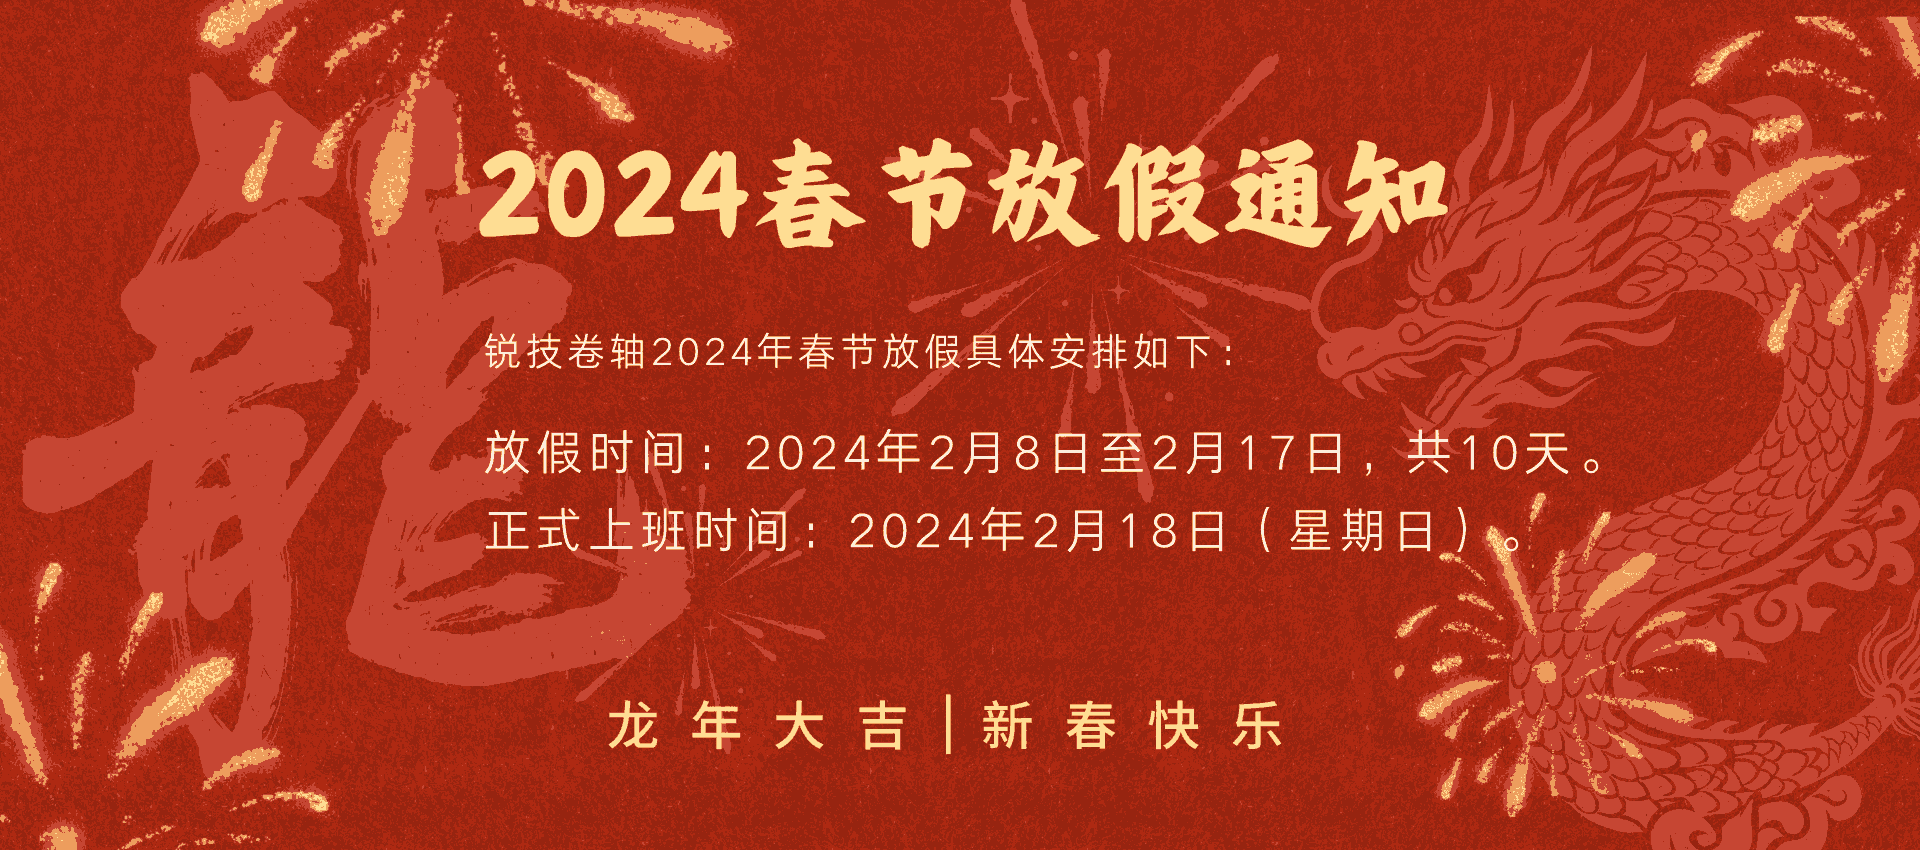 2024春节放假通知 (1) (1) (1) (1).png